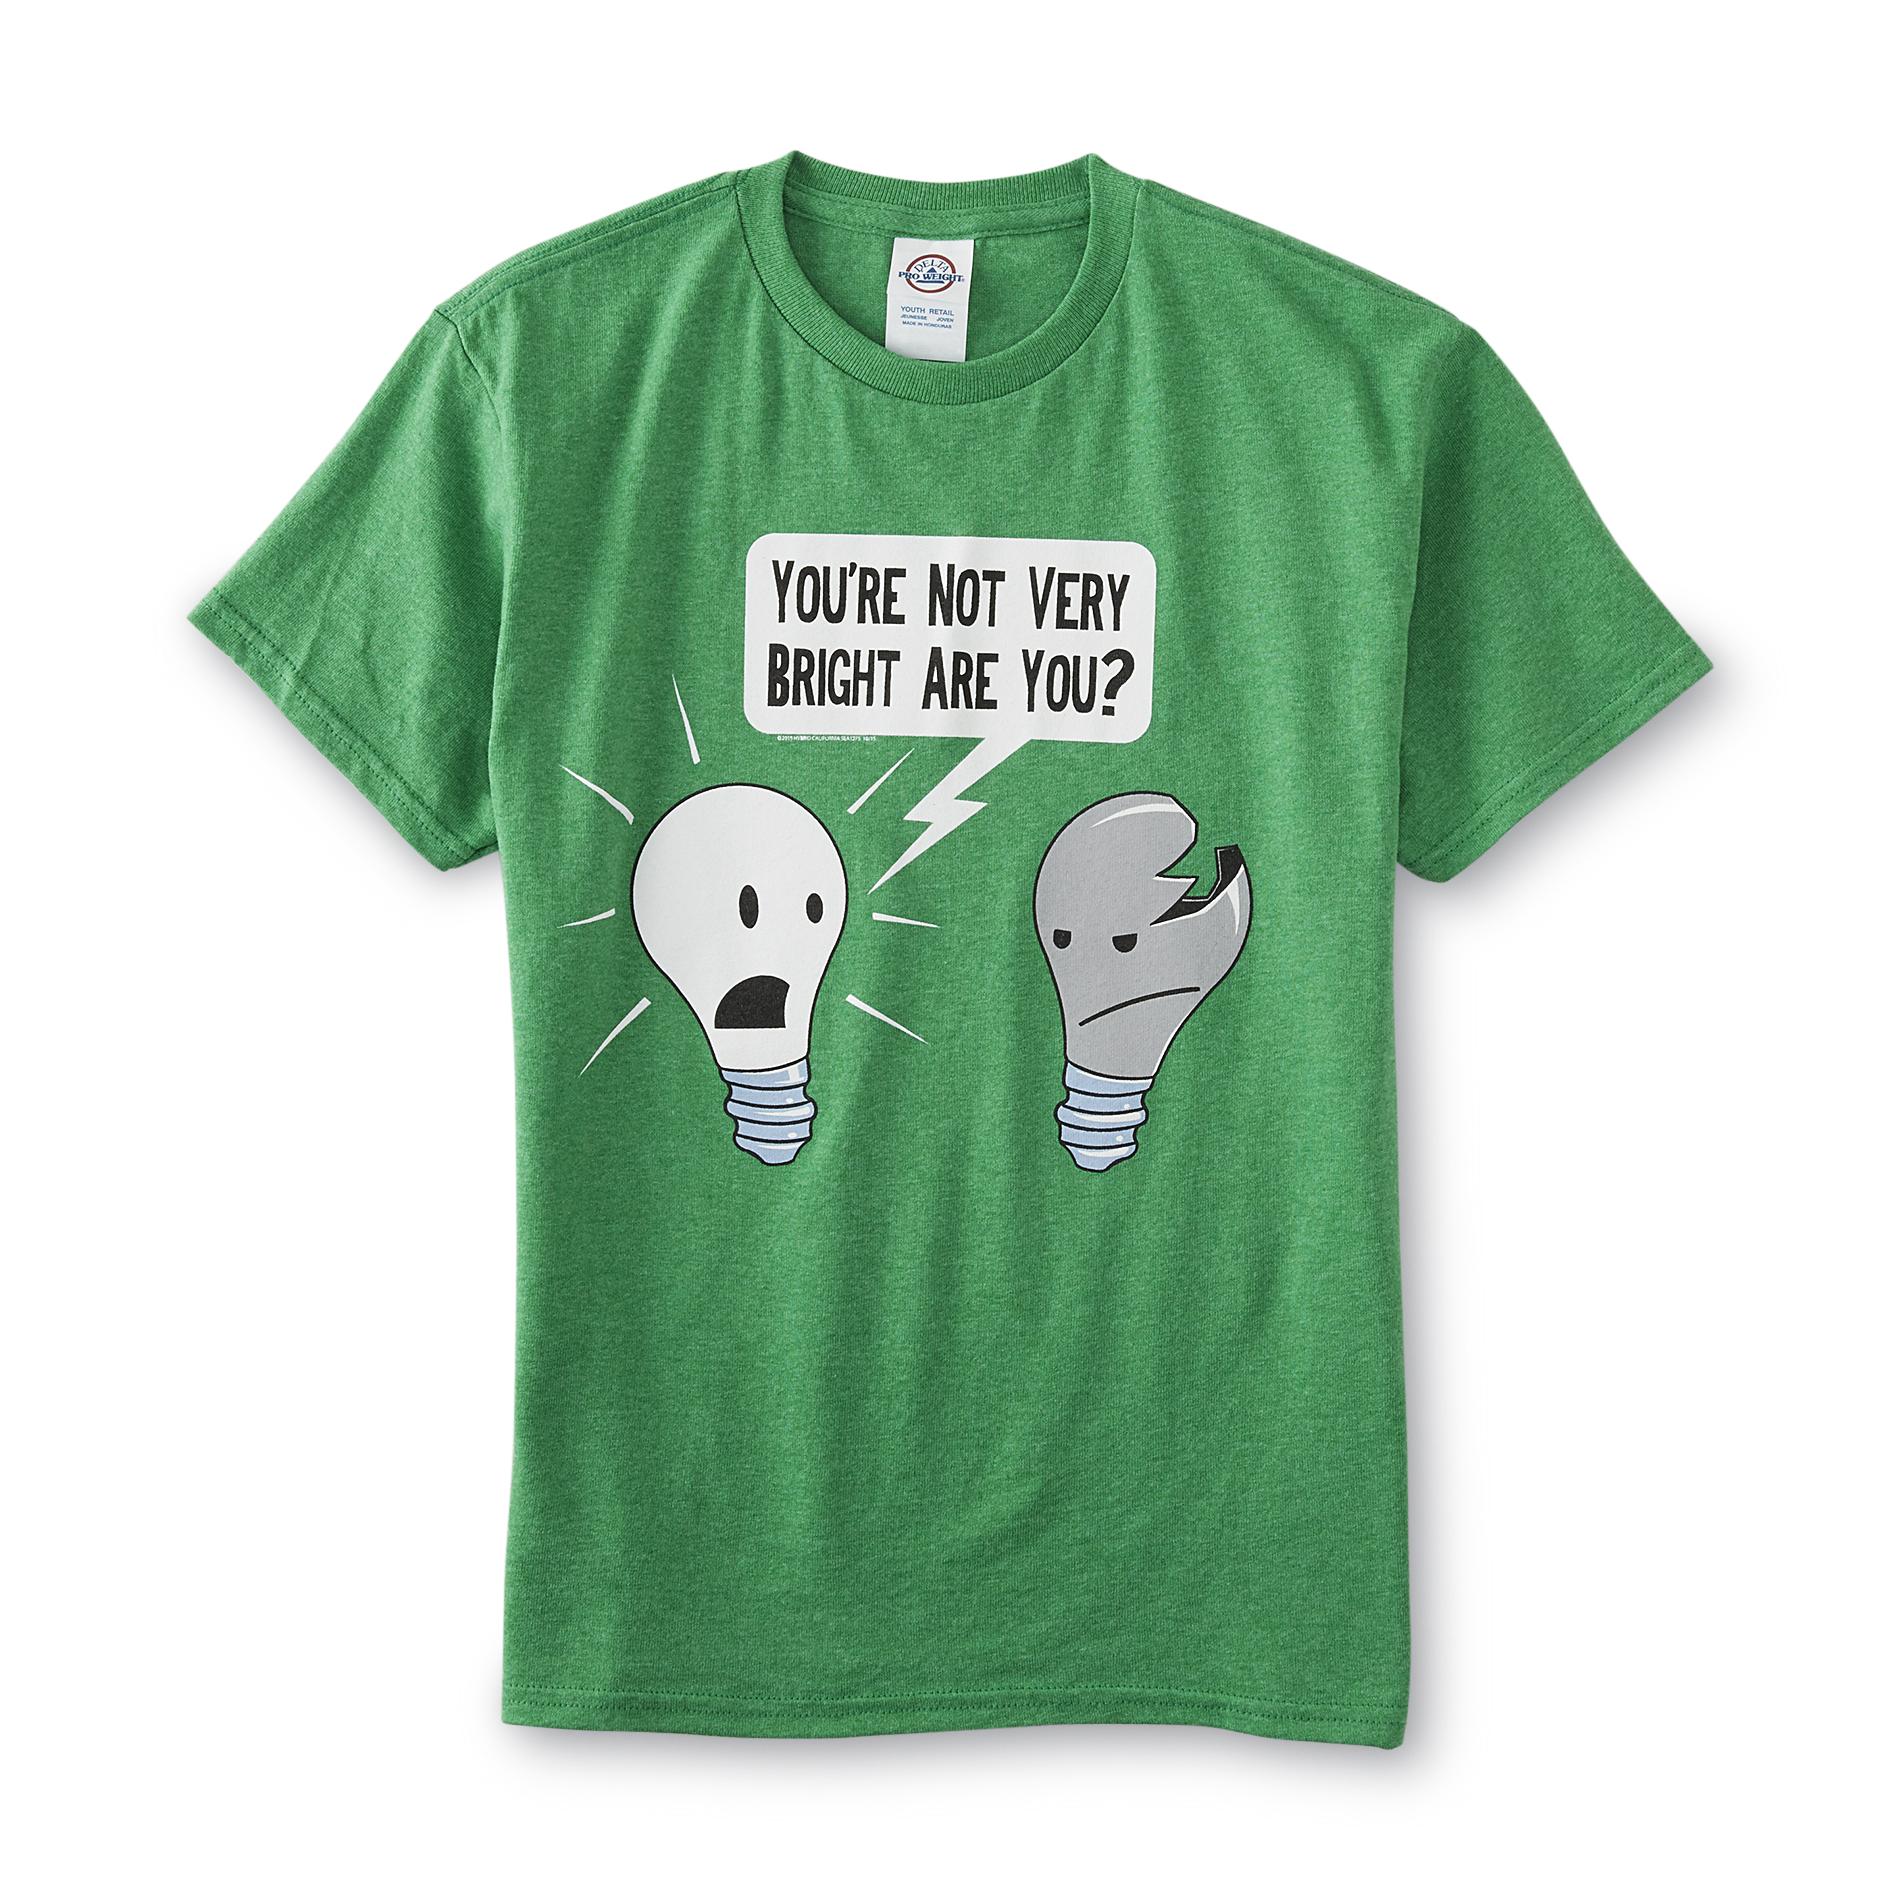 Boy's Graphic T-Shirt - Light Bulbs